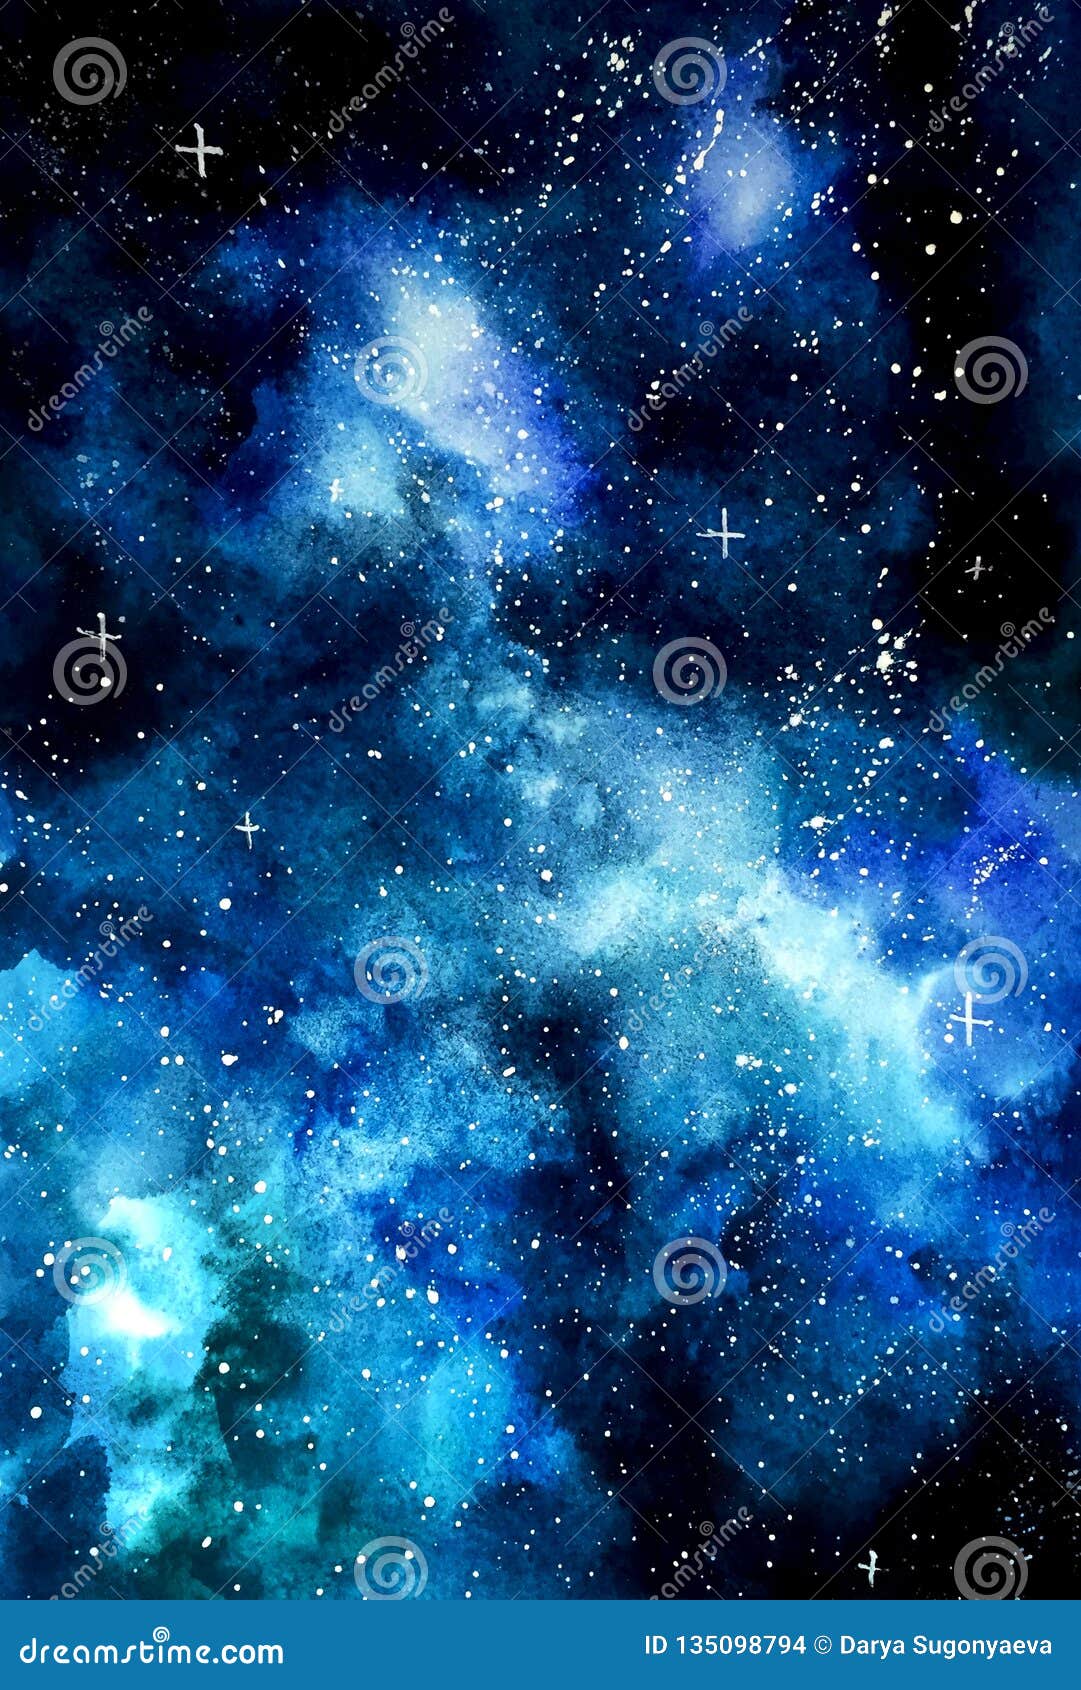 Hình nền Ngân Hà xanh: Nếu bạn là một fan của vũ trụ và màu xanh lá cây, thì hình nền Ngân Hà xanh sẽ là lựa chọn tuyệt vời. Những vệt sáng và đám mây màu xanh sẽ đưa bạn đến một thế giới mới lạ, nơi bạn có thể tìm hiểu sự đa dạng của vũ trụ.